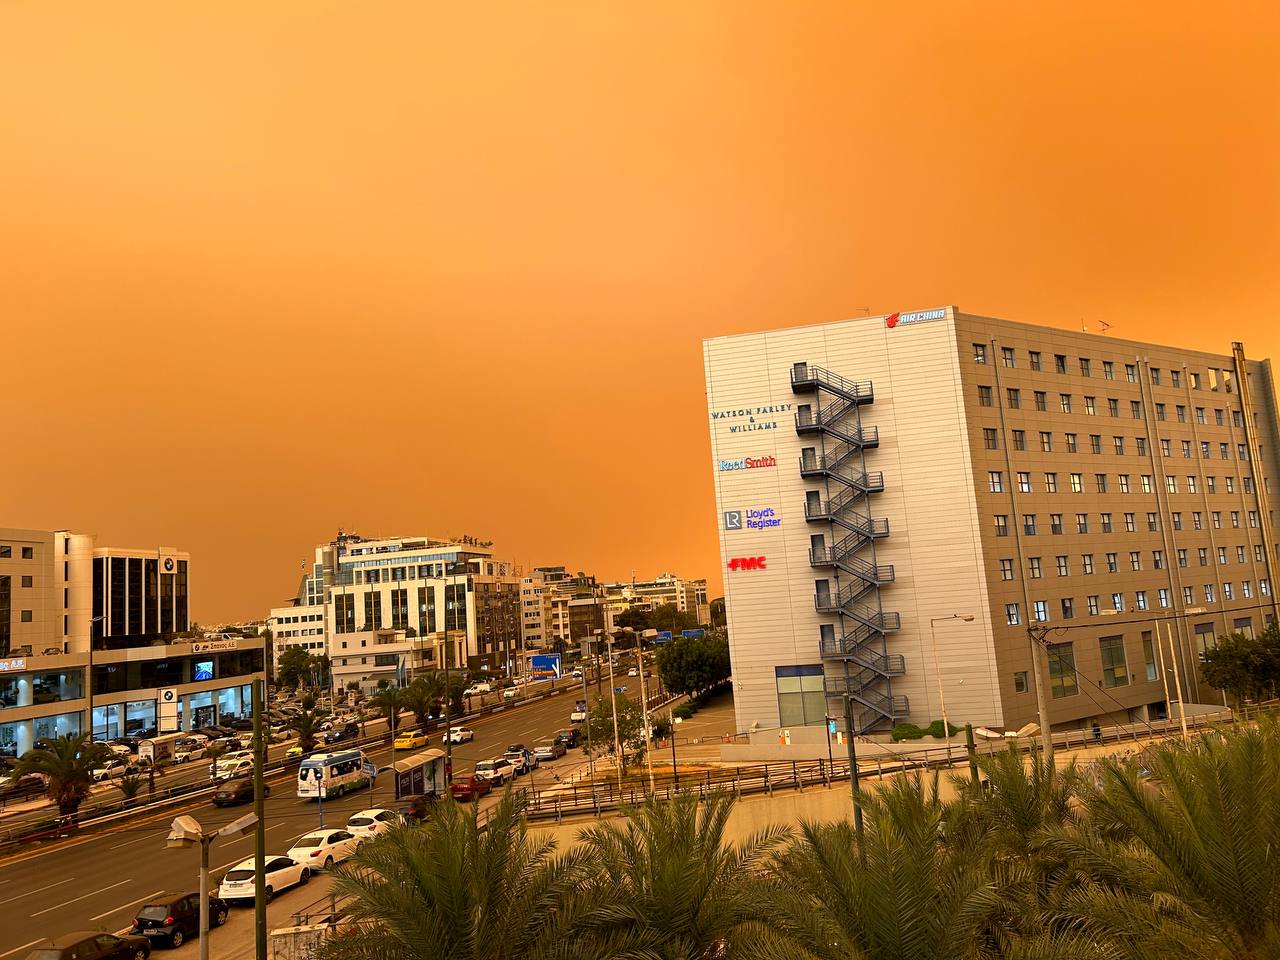 Αθήνα από άλλο πλανήτη - Δυστοπικό σκηνικό λόγω αφρικανικής σκόνης